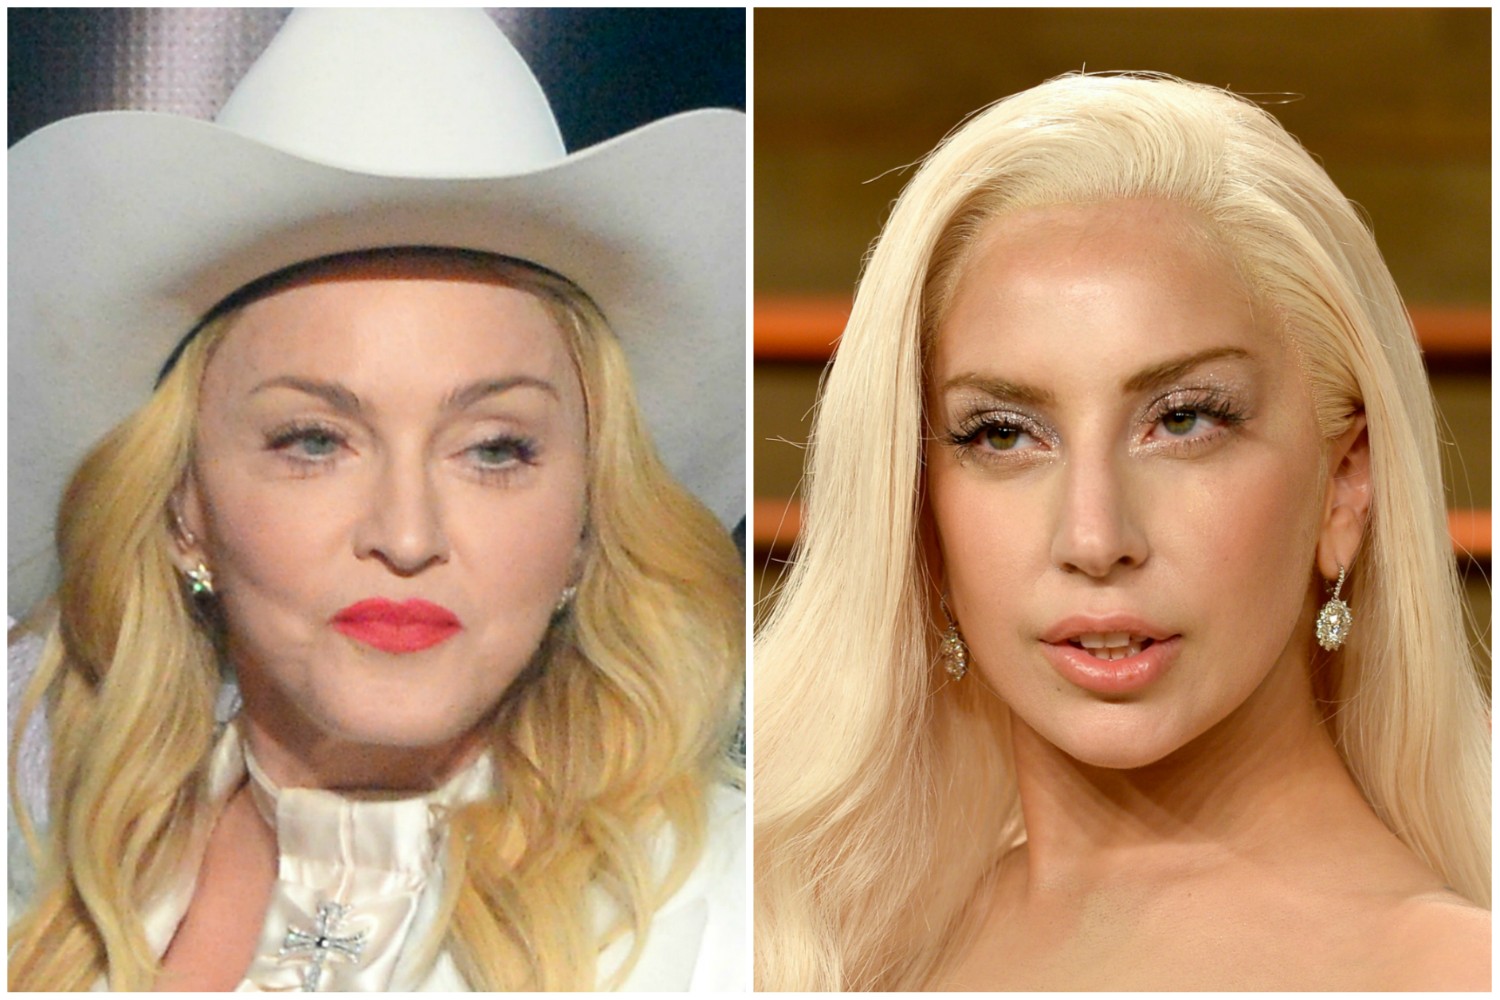 Mais uma, e talvez a mais conhecida, inimiga de Lady Gaga: Madonna. A rainha do pop, assim como muitas pessoas mundo afora, achou a música 'Born This Way', de Gaga, parecida demais com a sua 'Express Yourself', hit na virada dos anos 80 para os 90. Gaga disse que havia negociado o uso da canção de Madonna, a cantora veterana negou, e o climão azedou de vez quando, em uma entrevista para televisão, a estrela de 55 anos afirmou considerar a de 28 "redutiva" em termos artísticos. Gaga respondeu pelo Twitter: "Eu não quero a p***a do seu trono". (Foto: Getty Images)